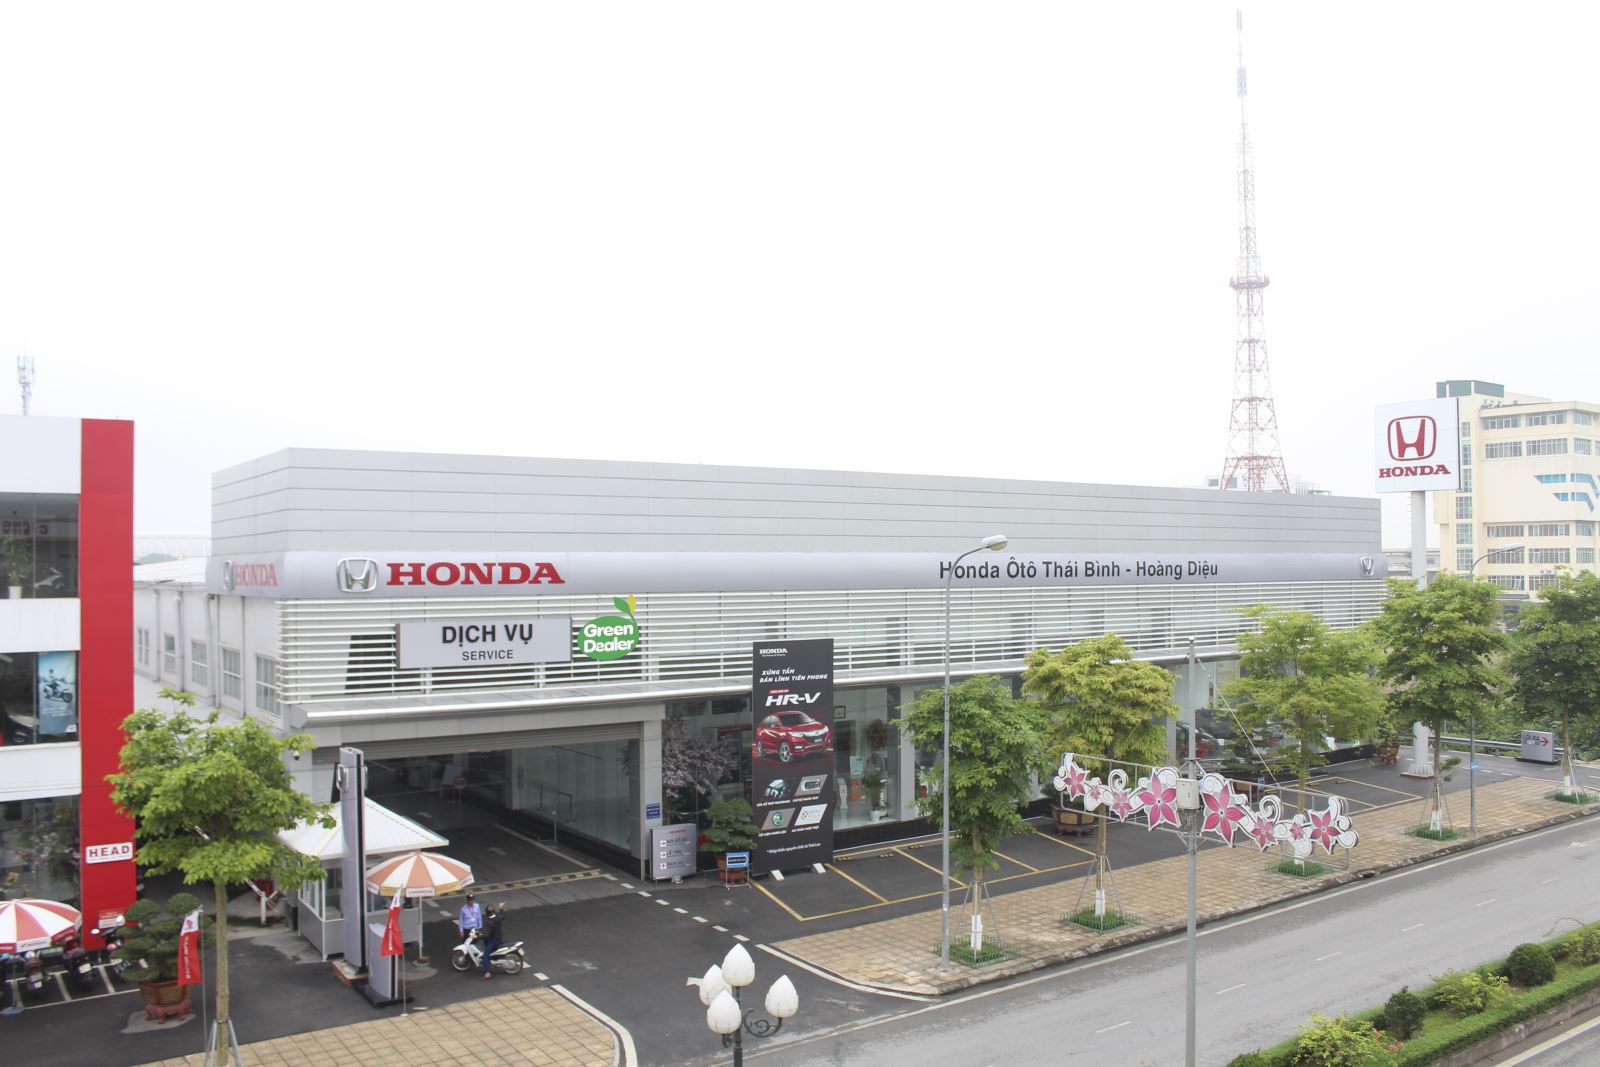 Thông báo Thay đổi tên Pháp nhân quản lý hoạt động của Đại lý Honda Ôtô Thái Bình-Hoàng Diệu